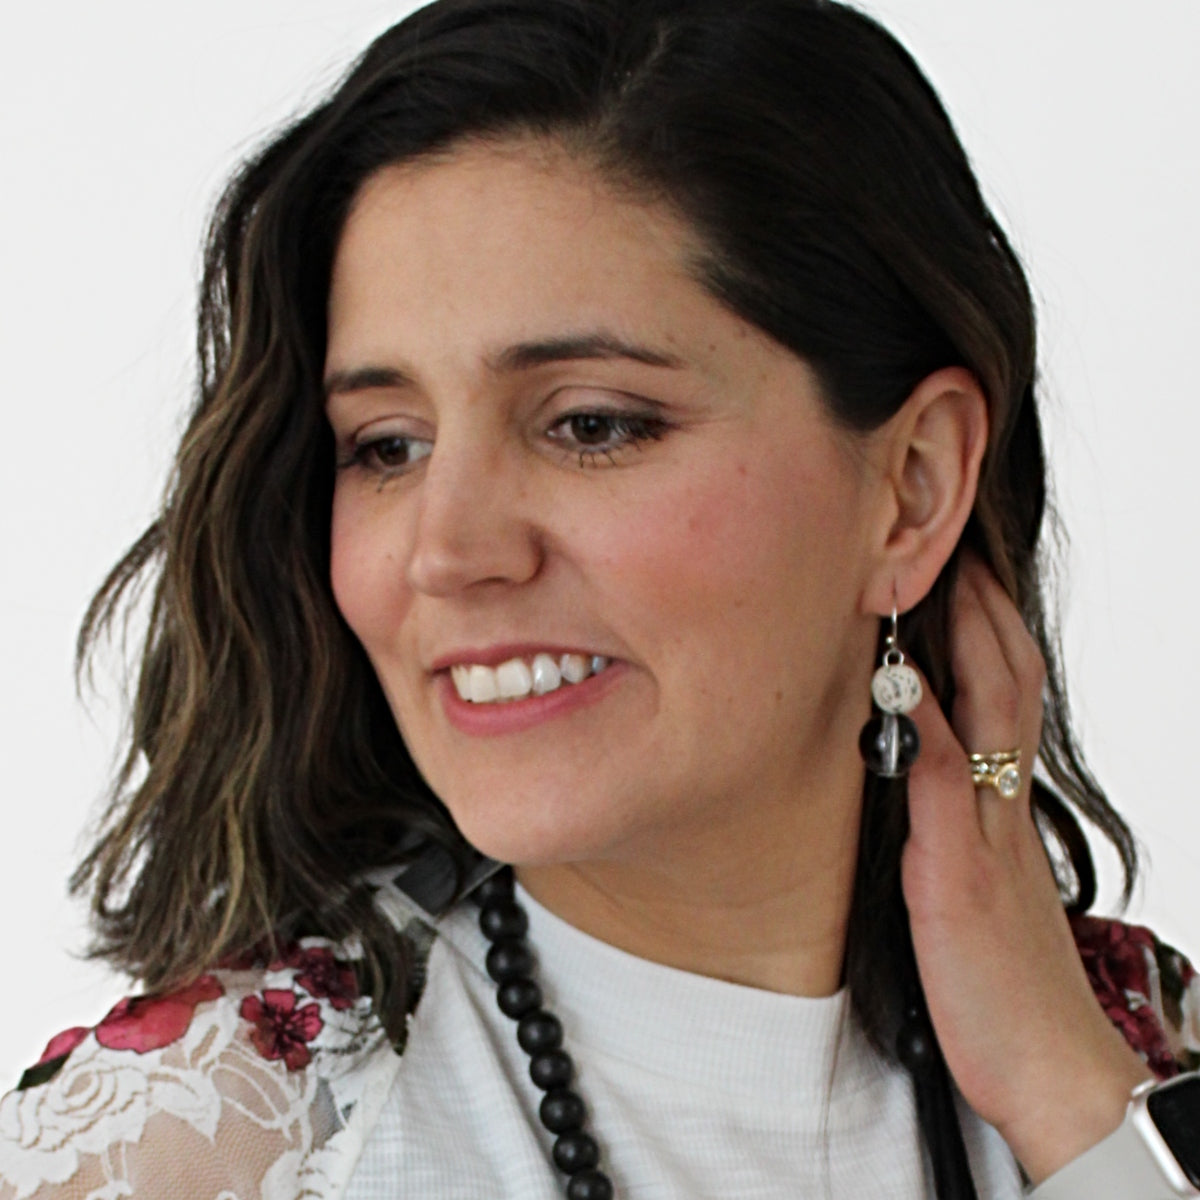 Marble Belinda Earrings